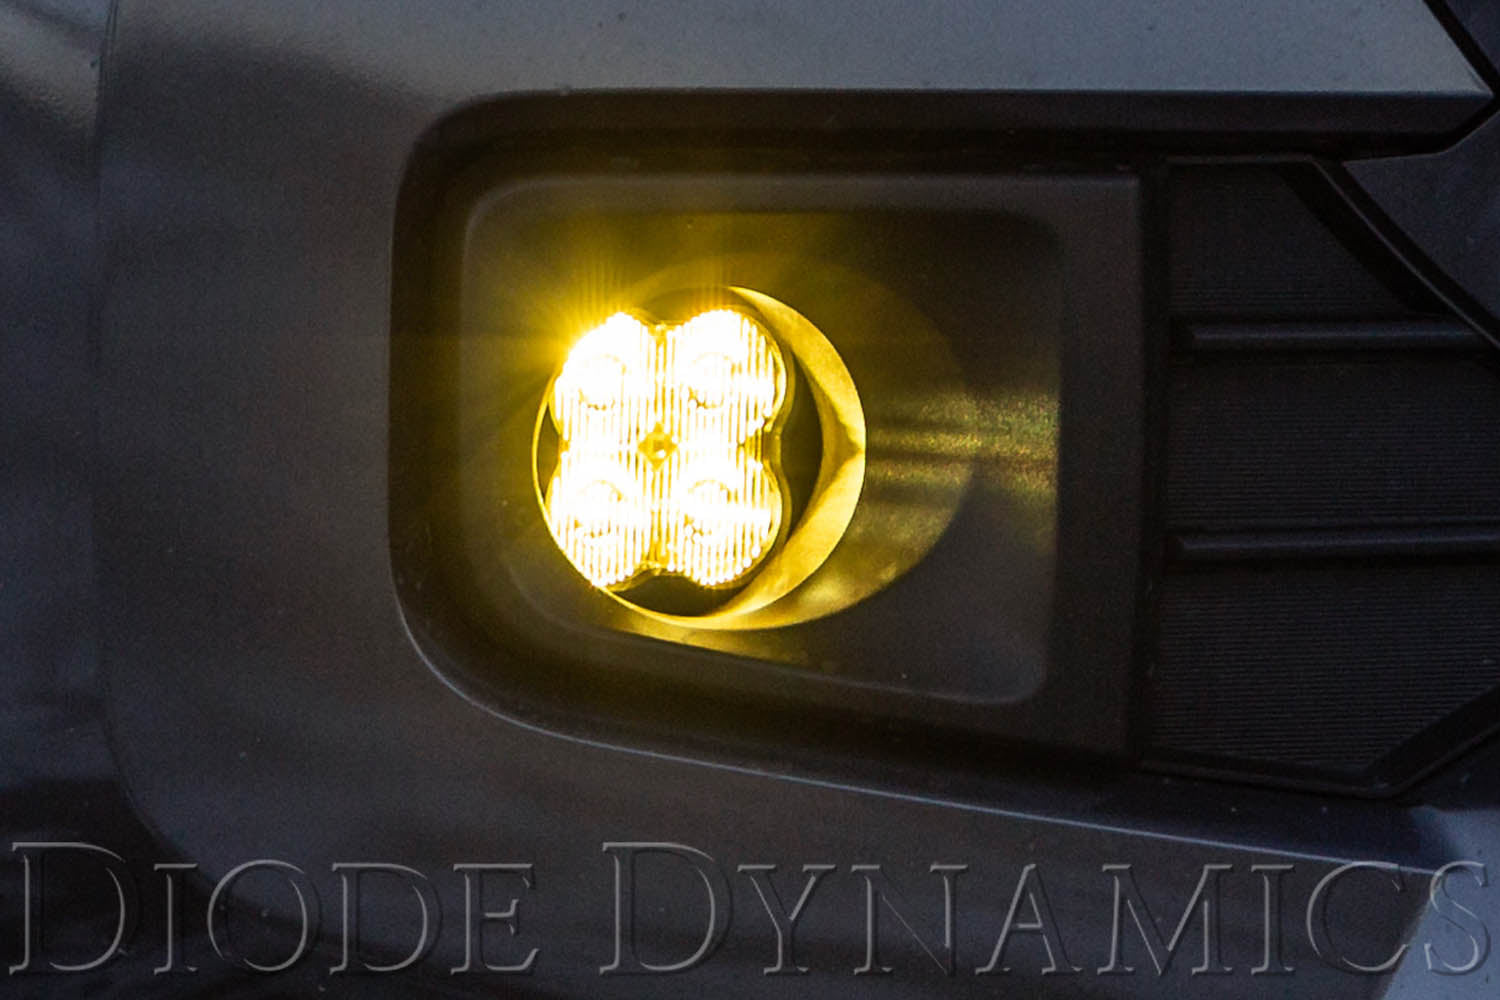 SS3 LED Fog Light Kit for 2008-2010 Toyota Highlander White SAE/DOT Driving Pro w/ Backlight Diode Dynamics